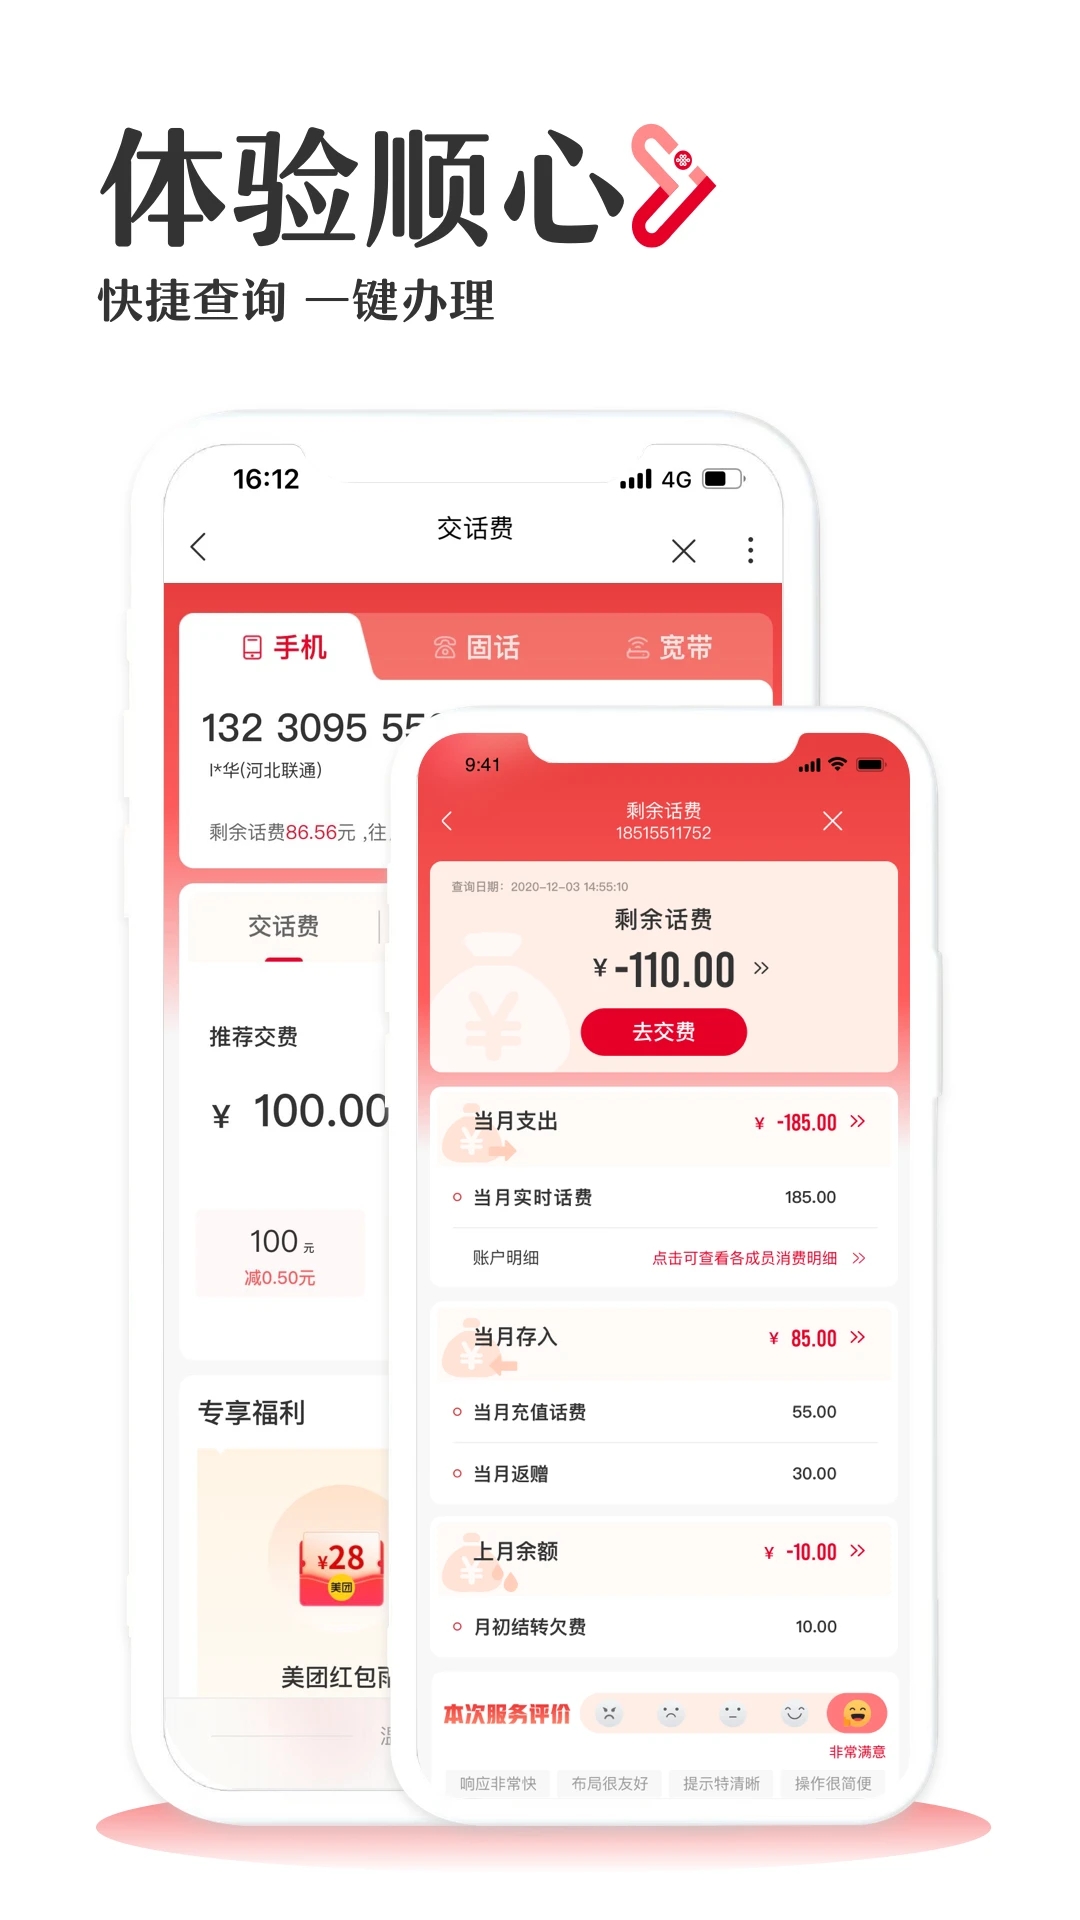 中国联通app下载安装官方版